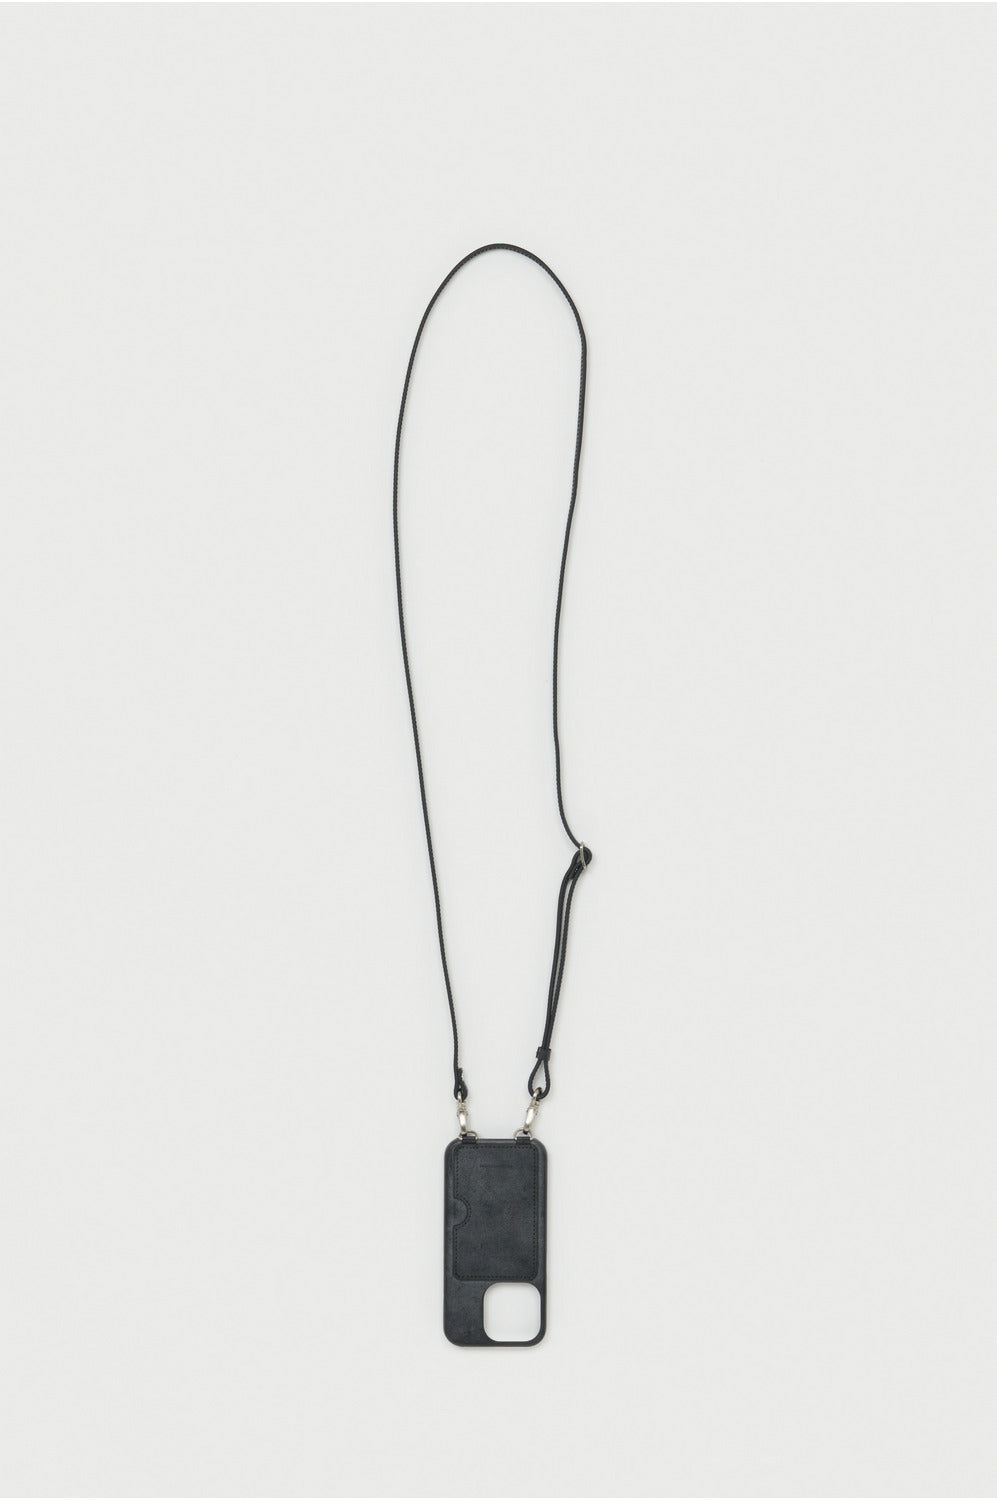 Hender Scheme iPhone case with strap